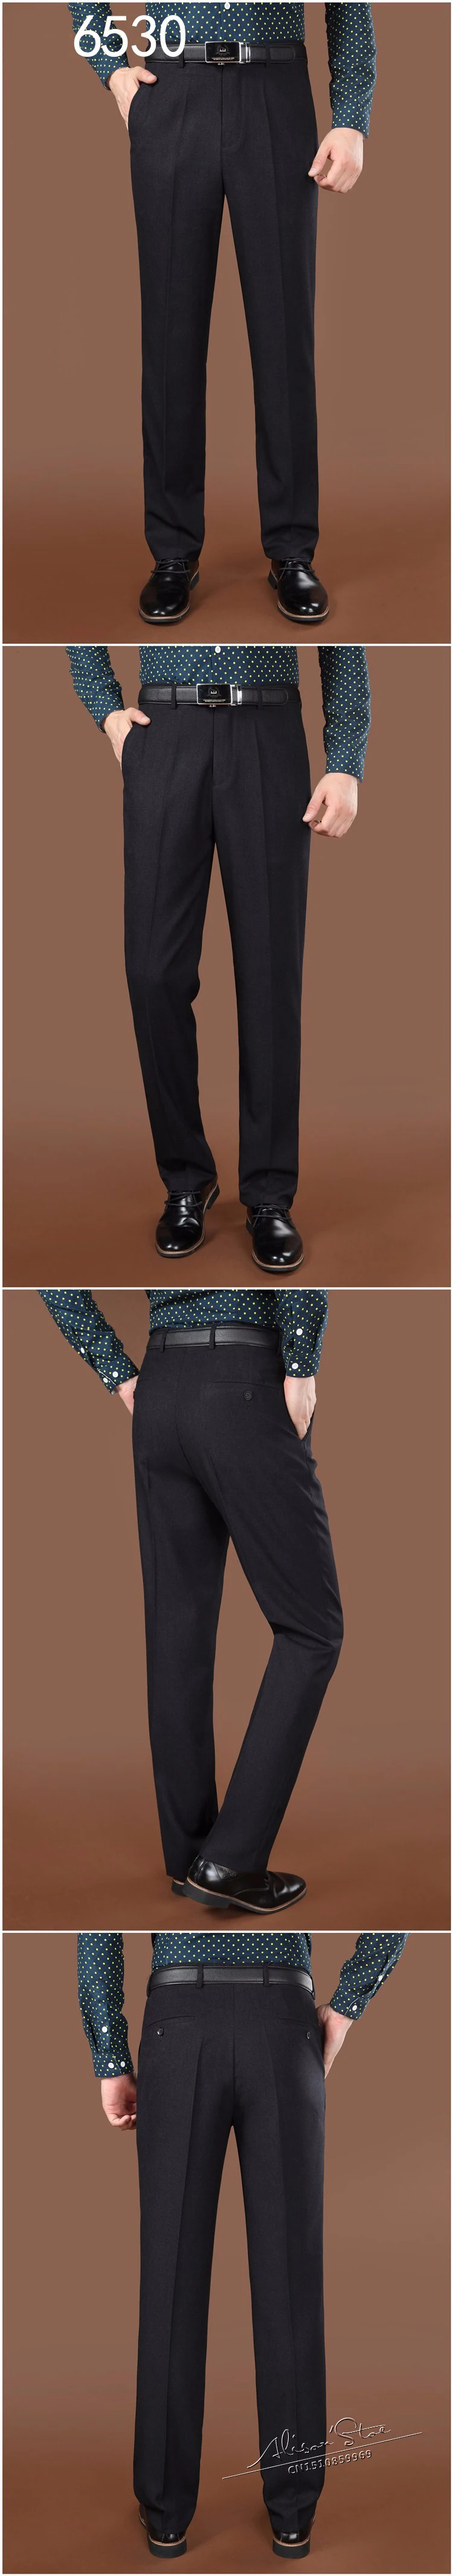 ICPANS костюм брюки формальная мужская одежда костюмы и Блейзер костюм брюки человек формальный осень зима платье брюки смесь шерсти большой размер 44